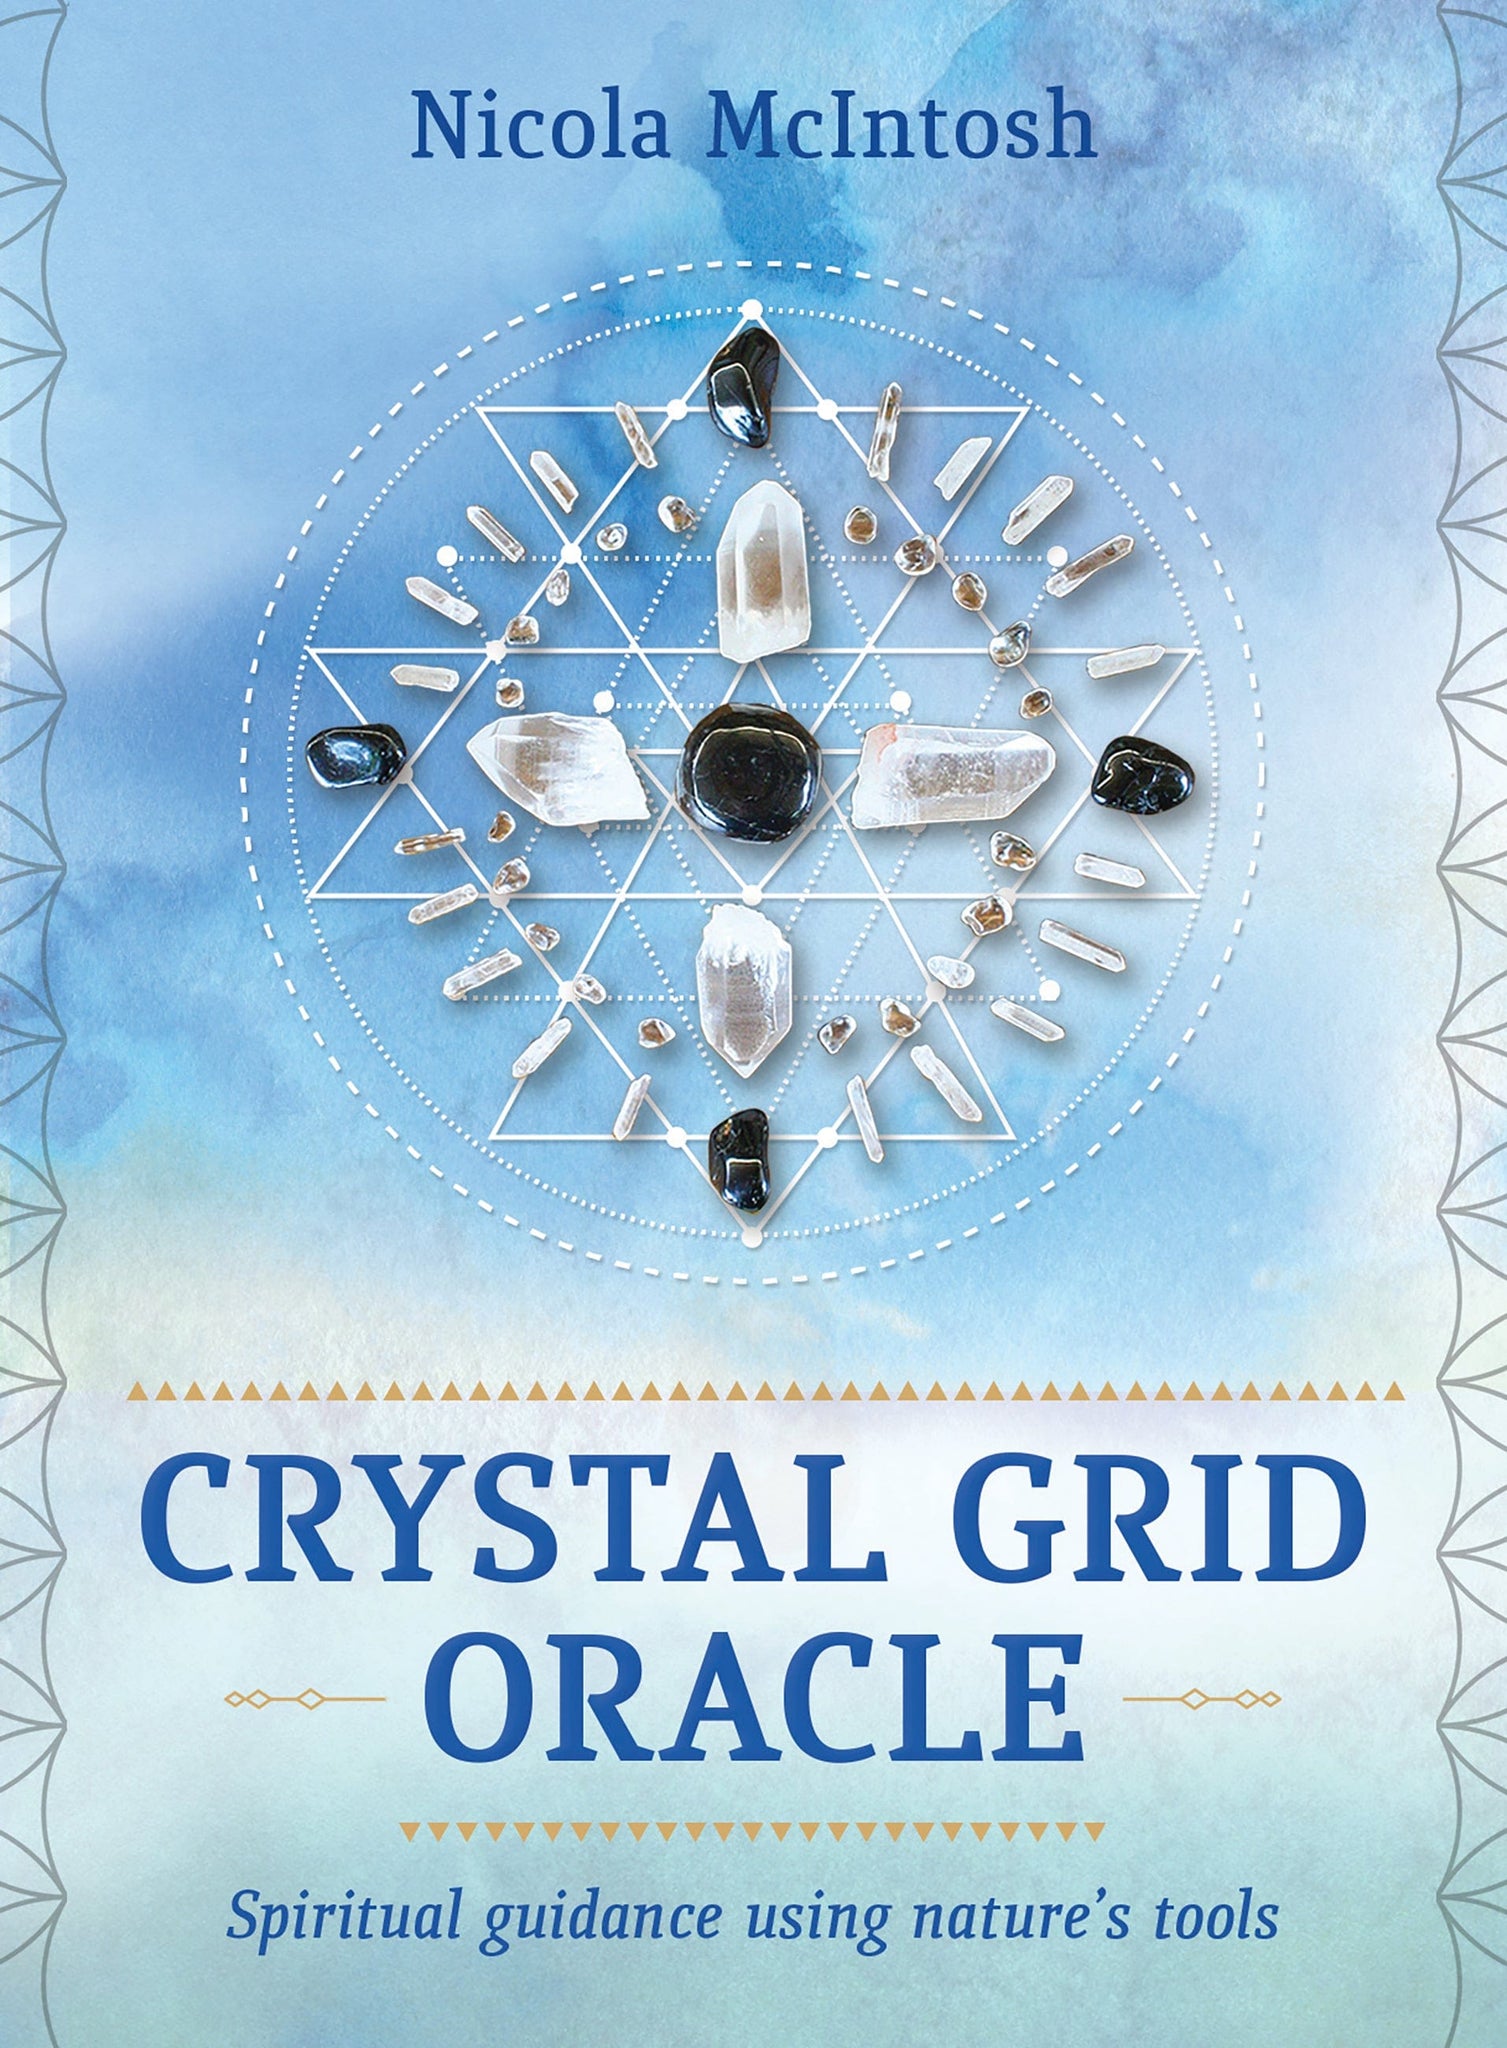 Crystal Grid Oracle by Nicola McIntosh